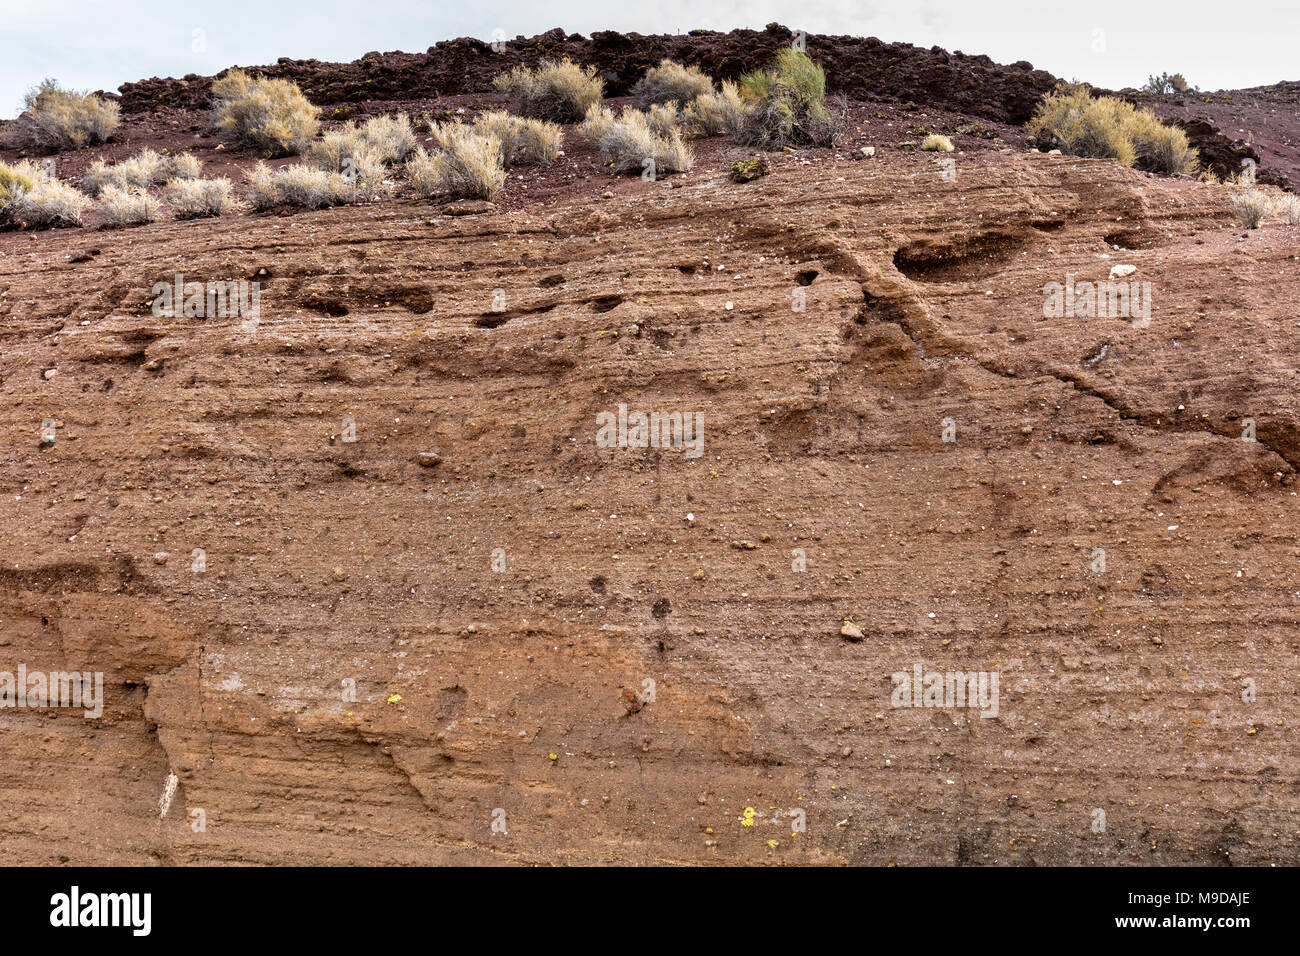 Les strates exposées montrant des dépôts de cendres volcaniques, Sunset Crater National Monument, Arizona Banque D'Images